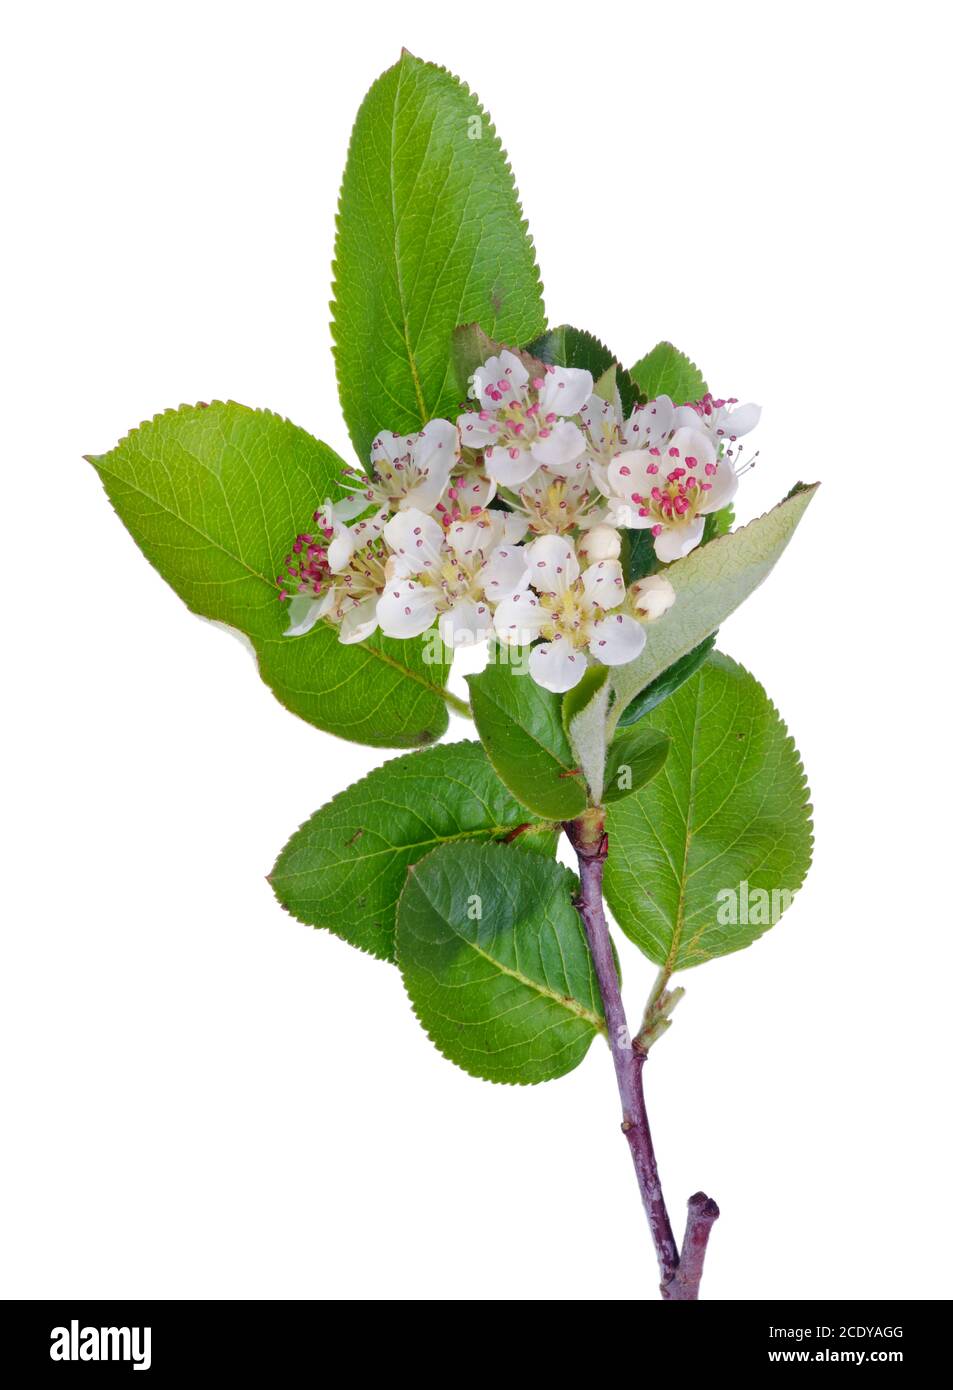 Primavera maggio ramo di fiore selvaggio Bird Cherry albero con bianco fiori piccoli verticali isolati Foto Stock